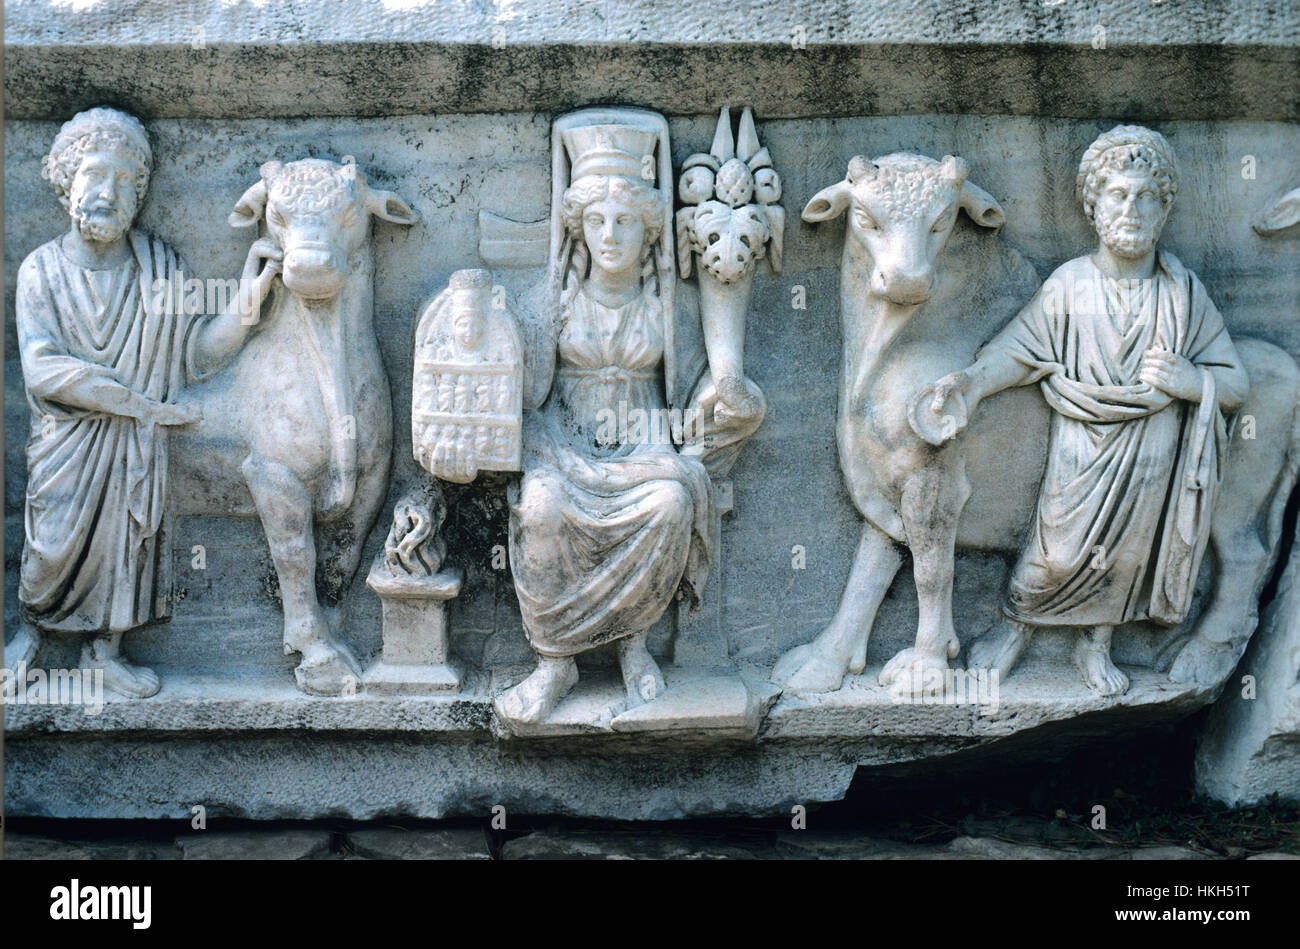 AD 2c gréco-romaine ou le Tombeau sarcophage montrant scène d'Artémis (au centre) tenant une corne d'abondance (dans sa main gauche) et un rituel Statue (dans sa main droite), Artemis est flanquée de deux prêtres menant deux taureaux pour un sacrifice rituel Bull. Le sacrifice rituel avait lieu tous les ans au Temple d'Artémis à Pergaea Perga ou Pergé, Turquie. Banque D'Images